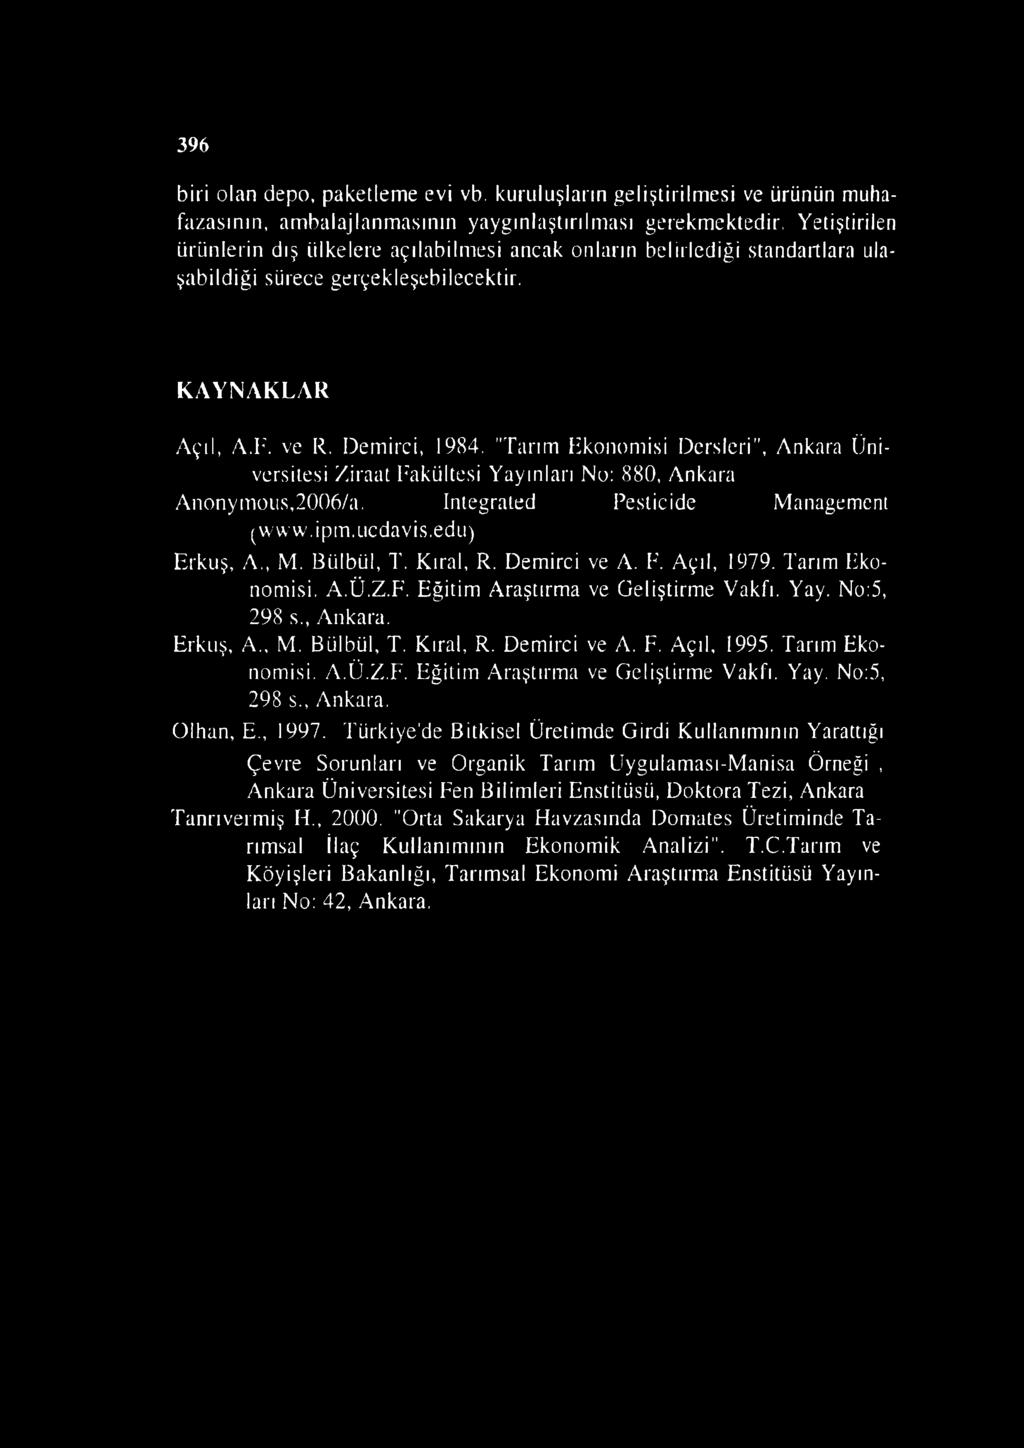 "Tarım Ekonomisi Dersleri", Ankara Üniversitesi Ziraat Fakültesi Yayınları No: 880, Ankara Anonymoııs,2006/a. Integrated Pesticide Management (www.ipin.iicdavis.edu) Erkuş, A., M. Bülbül, T. Kıral, R.